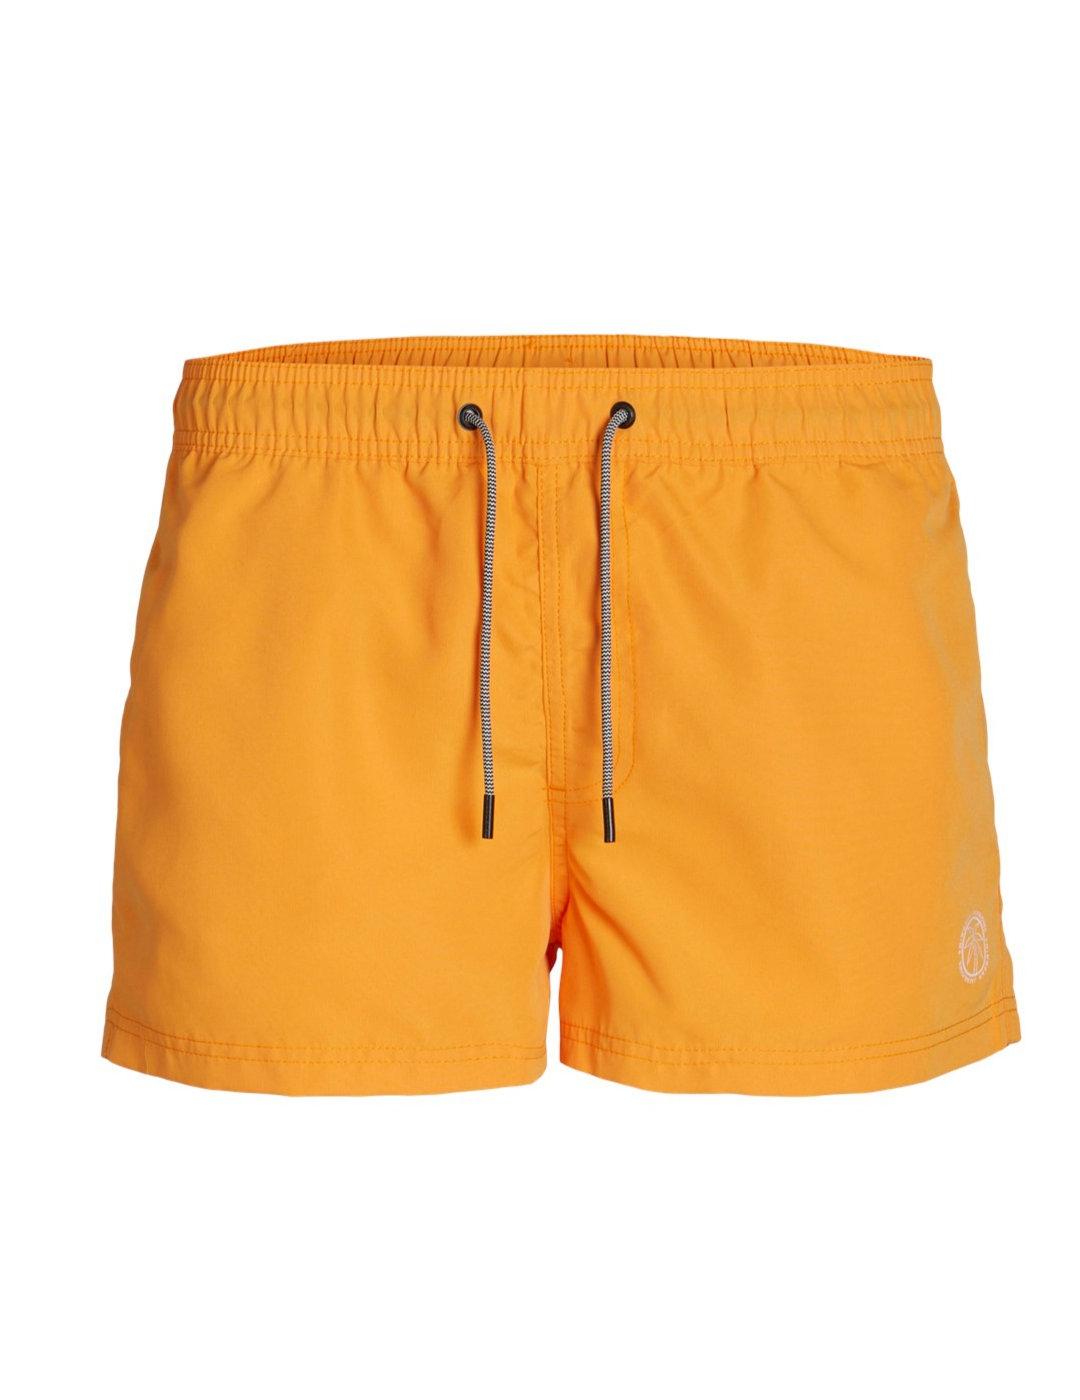 Bañador Jack&Jones Bora Bora naranja corto de hombre